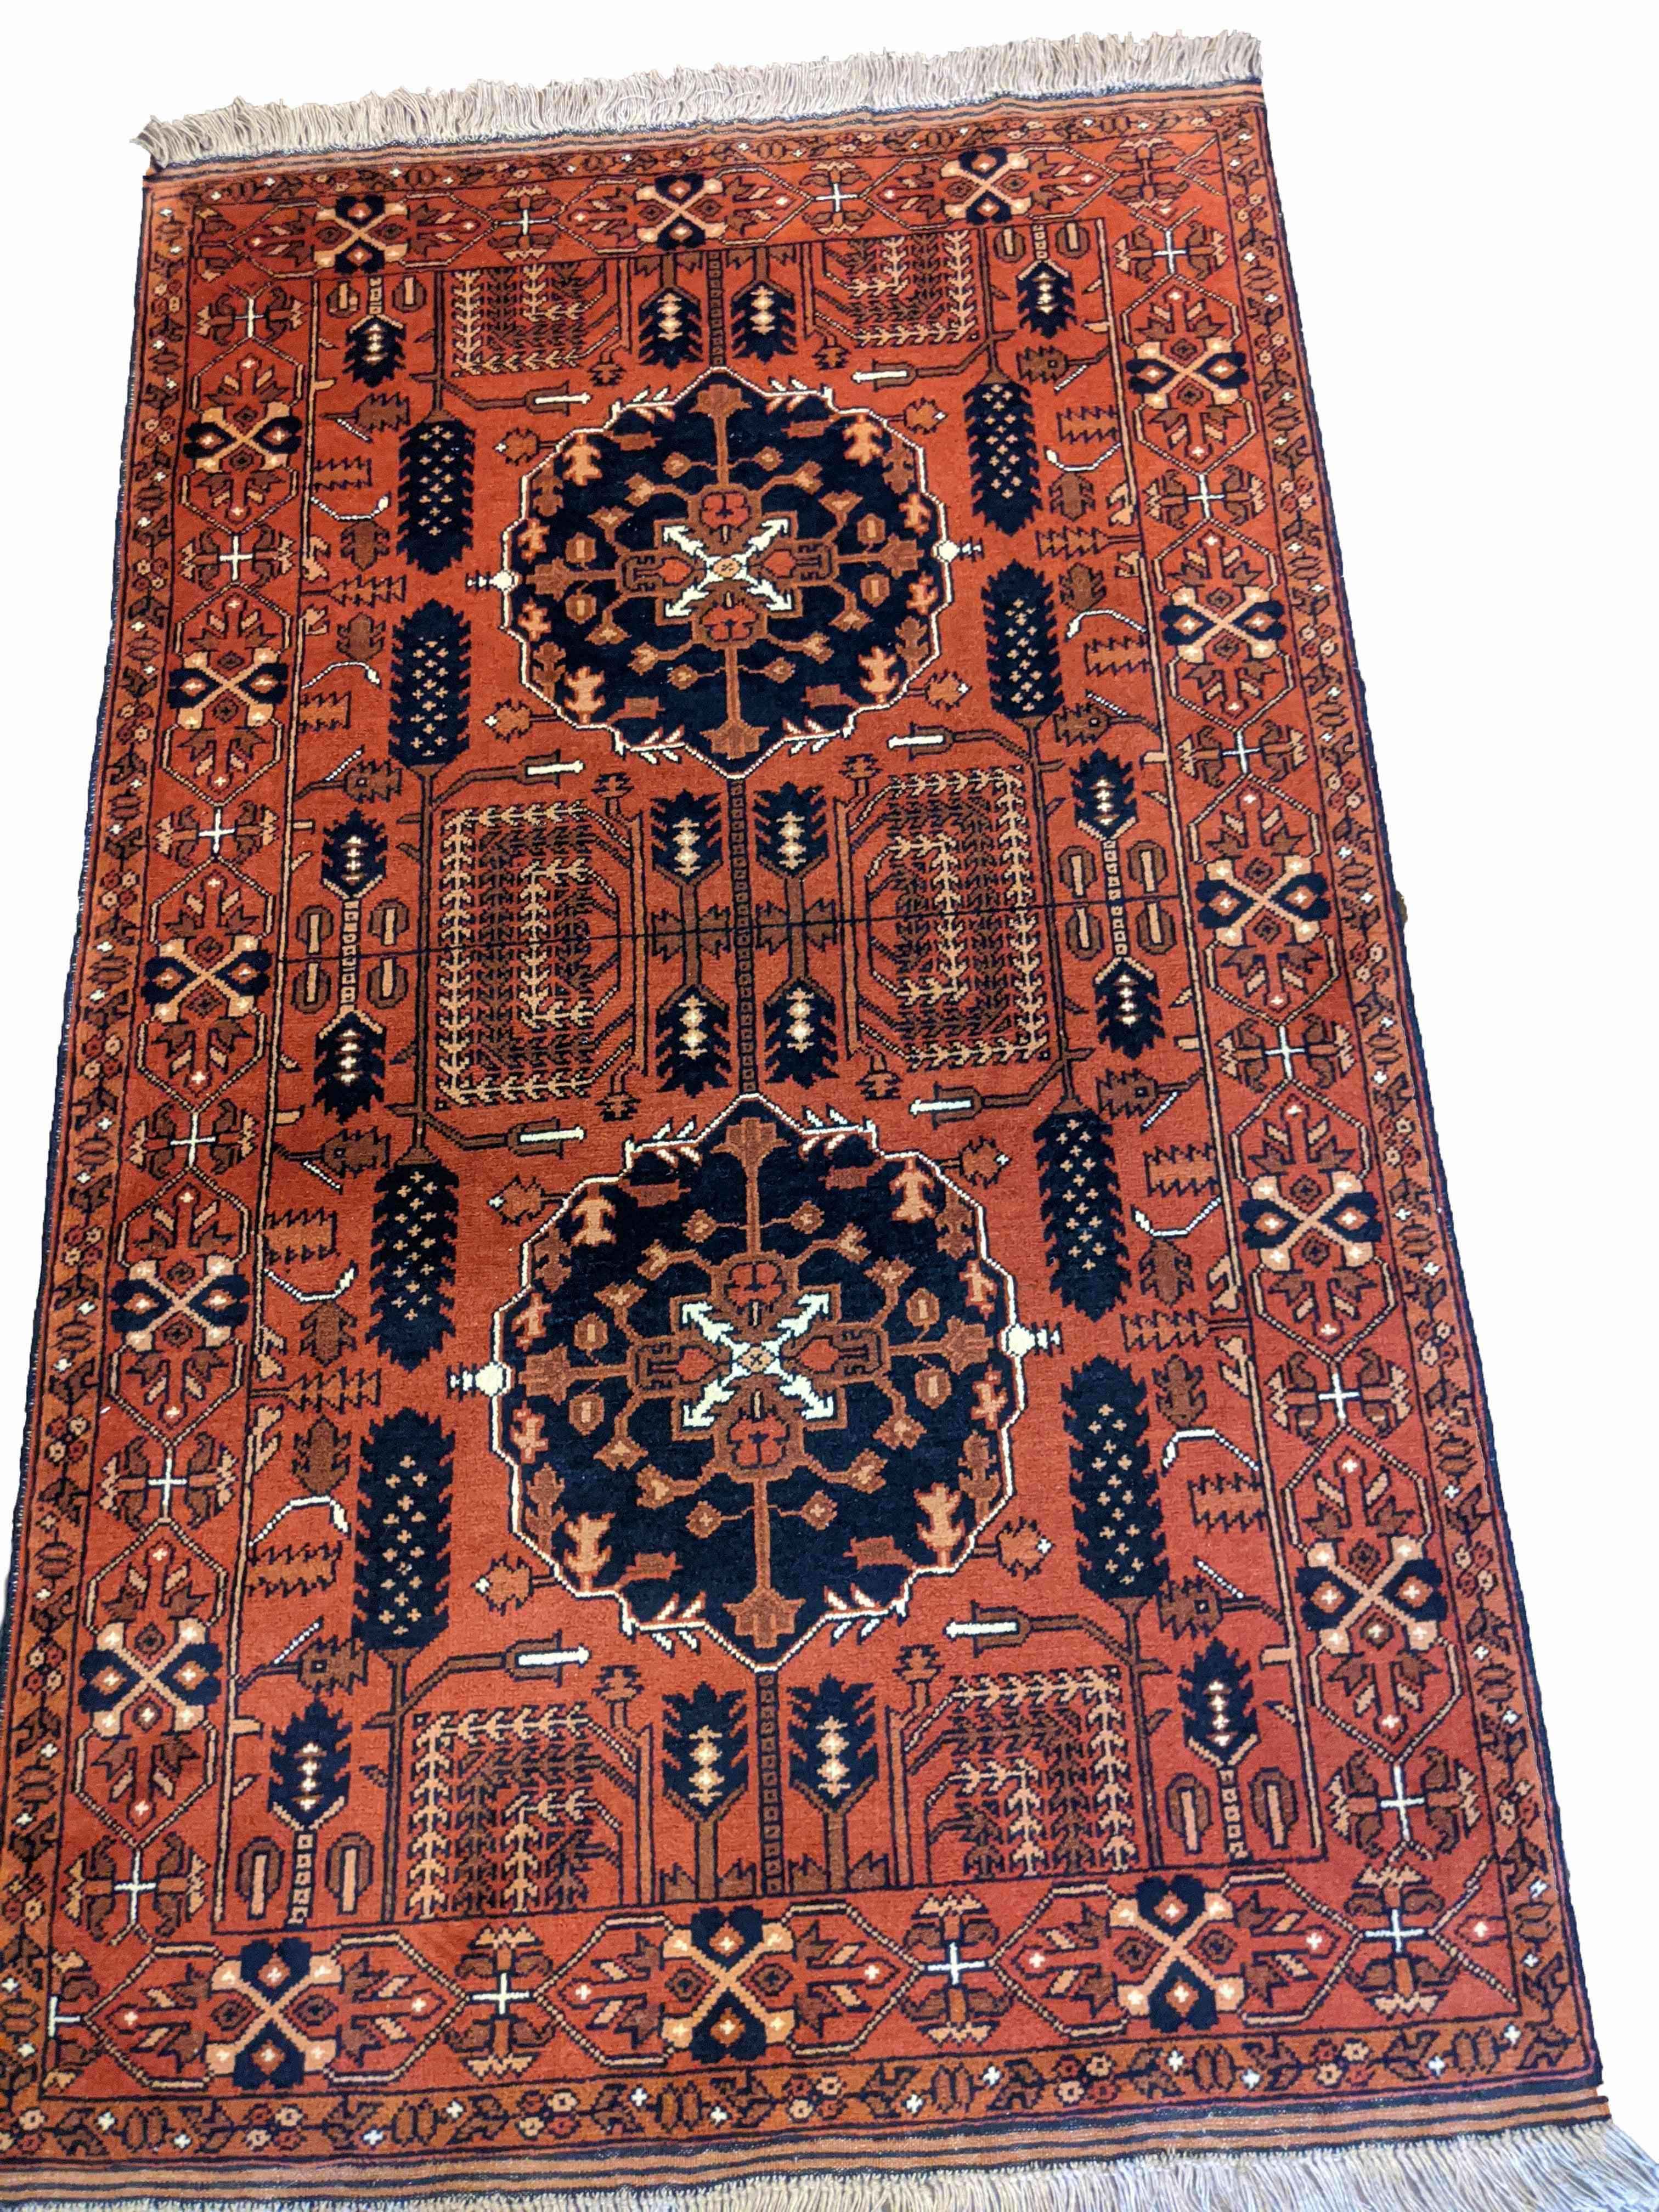 167 x 102 cm Afghan Tribal Brown Rug - Rugmaster